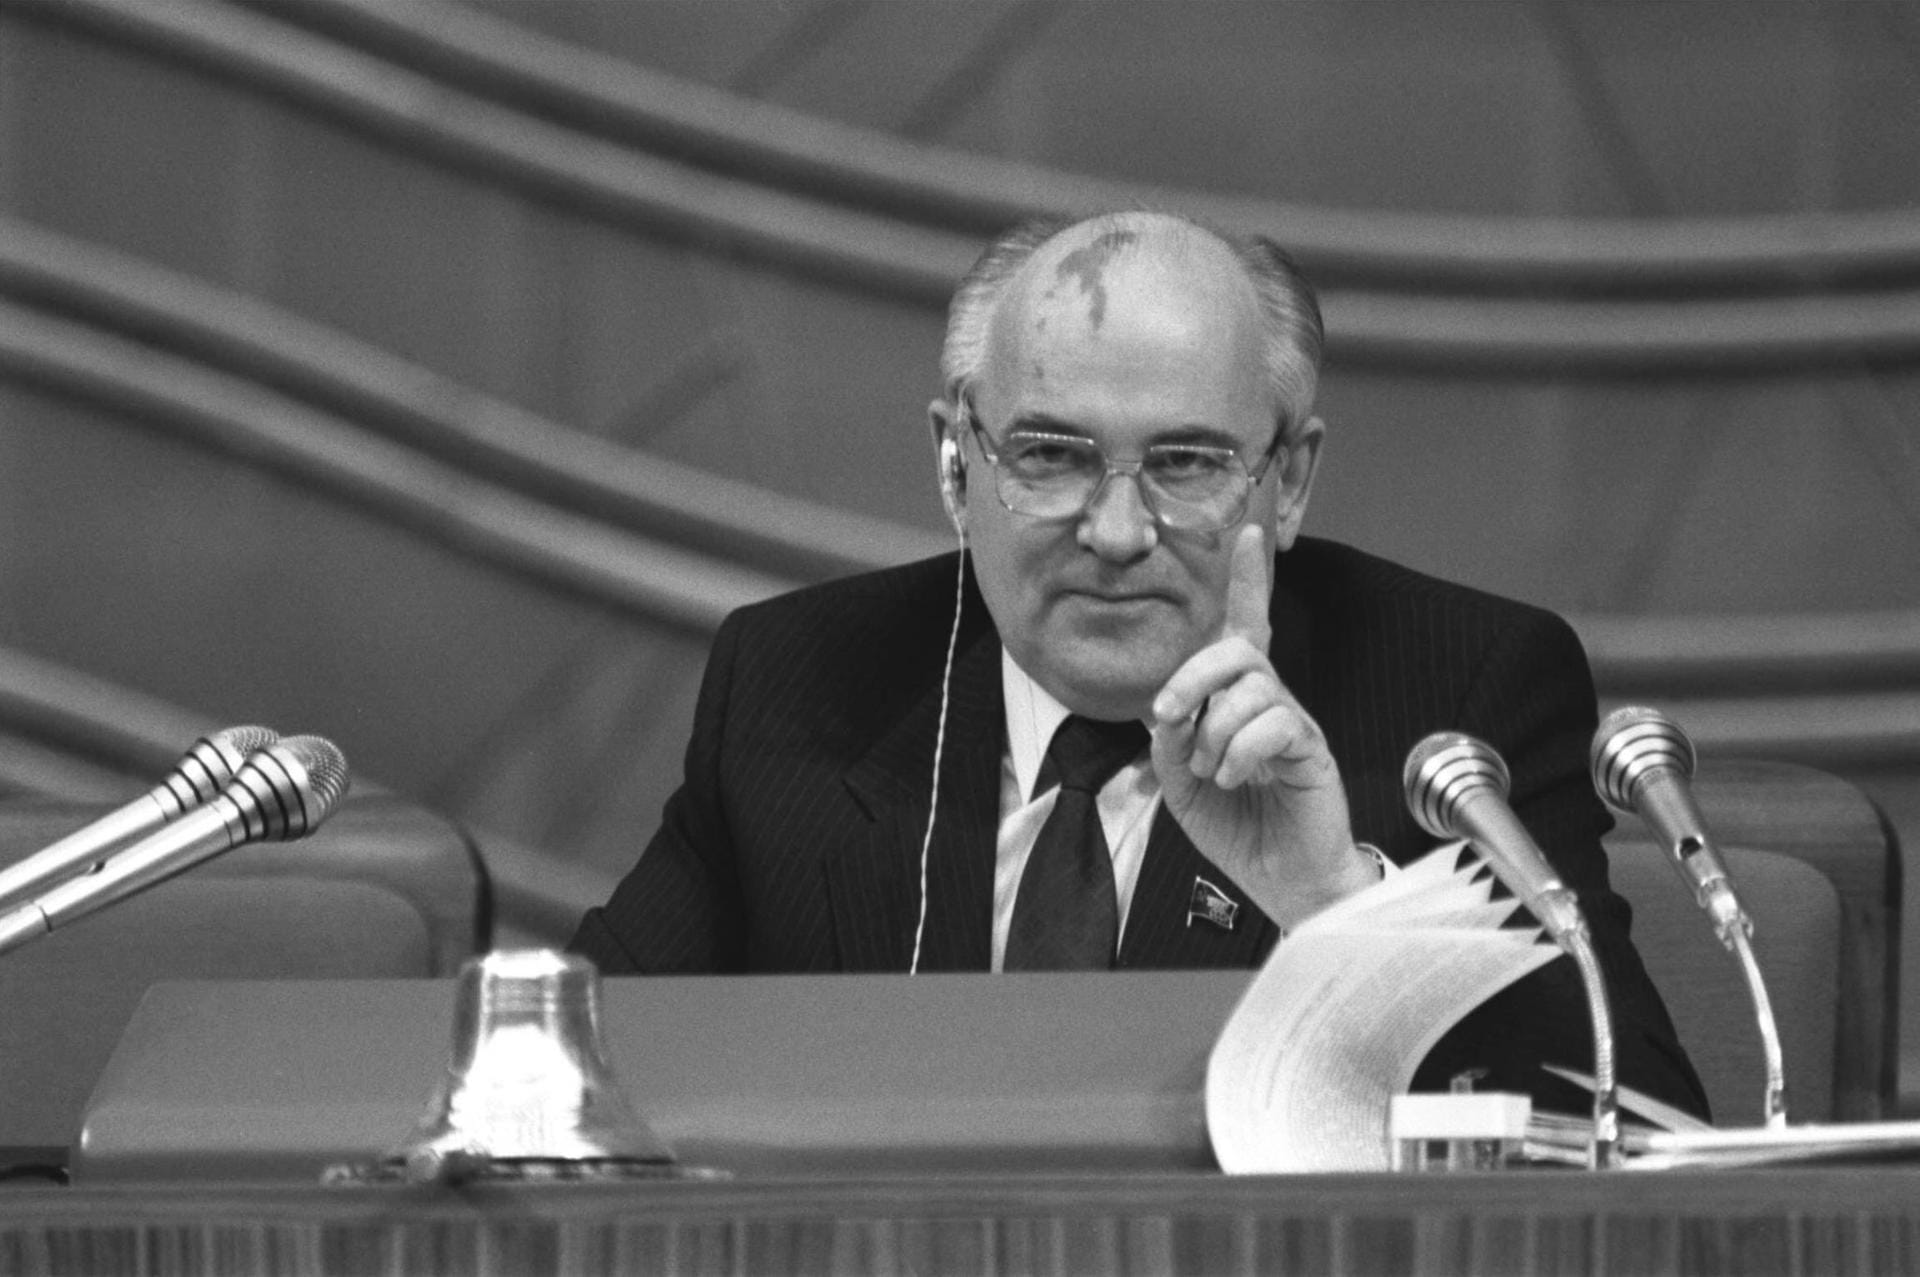 Michail Gorbatschow: Neue Akzente durch "Glasnost" und "Perestroika"